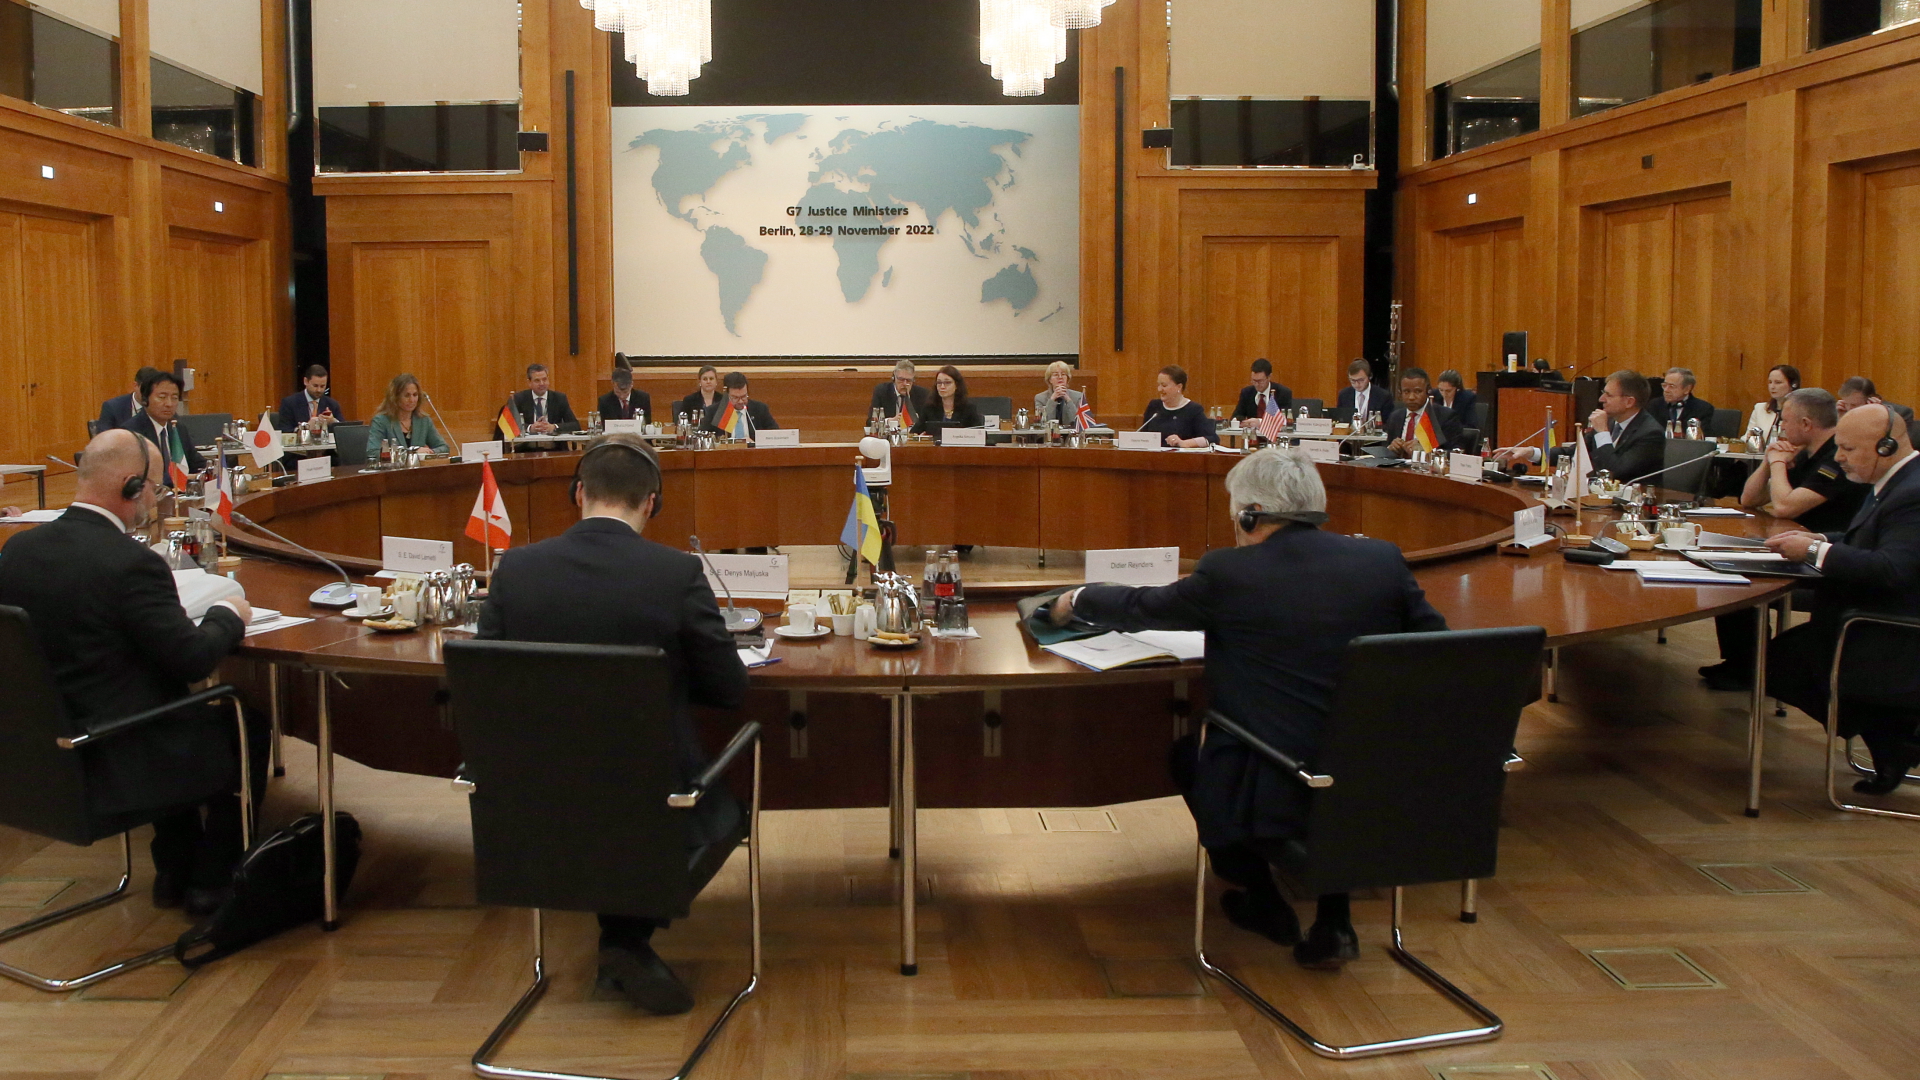 Marco Buschmann (FDP), Bundesjustizminister, leitet das Treffen der G7-Justizministerinnen und -minister im Auswärtiges Amt. | dpa